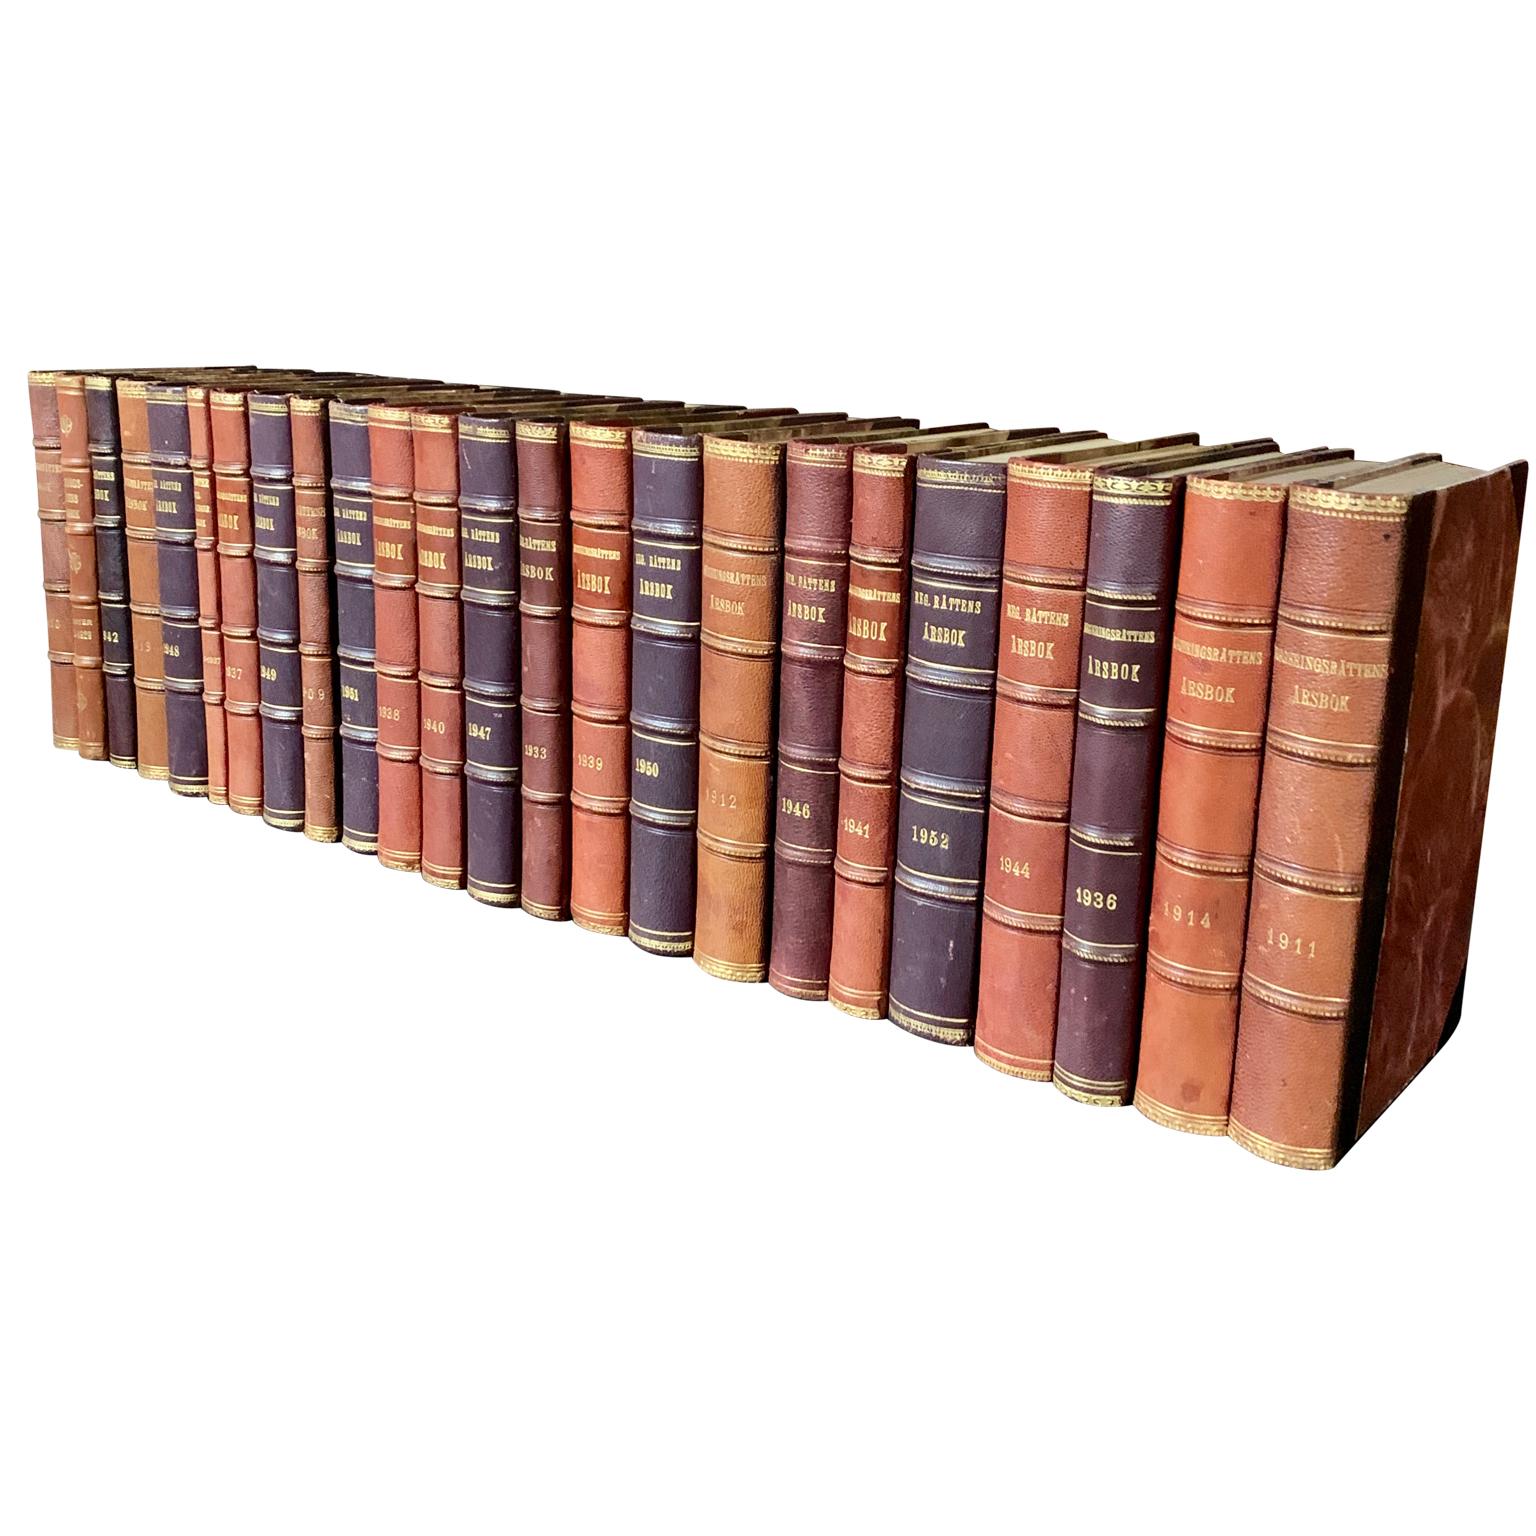 Eine Sammlung von 24 schwedischen dekorativen, antiken, in Leder gebundenen Bibliotheksbüchern.
Die Bücher sind in ledergebundene Einbände mit einer Auswahl an warmen Farbtönen und Blattgoldprägung gehüllt.
Das Buch Collection'S messen horizontal